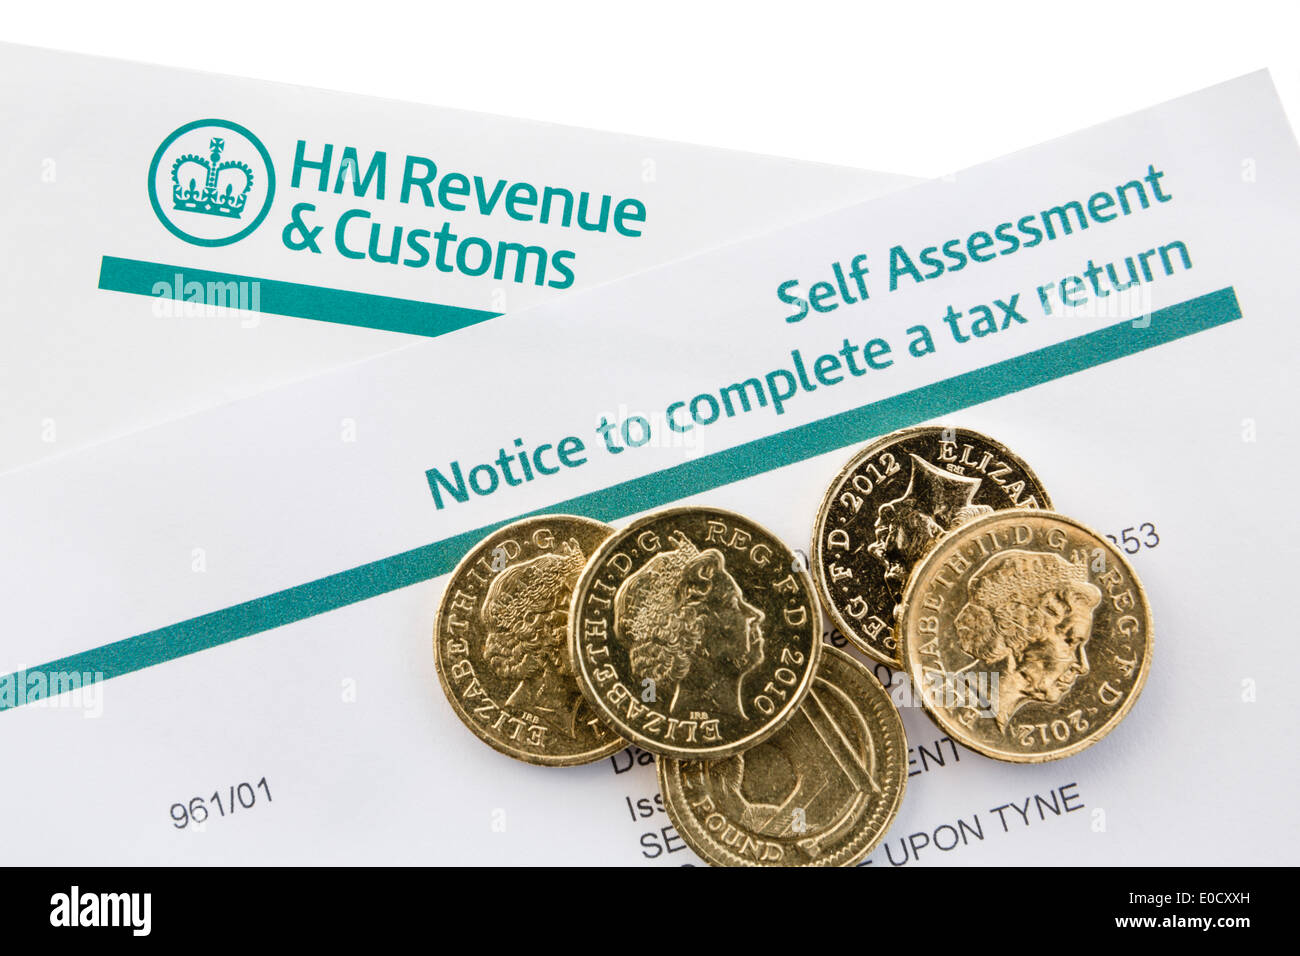 Regno Unito HM Revenue & Customs Self Assessment avviso per completare un ritorno fiscale con alcune monete cancelletto sul bianco. In Inghilterra La Gran Bretagna Foto Stock